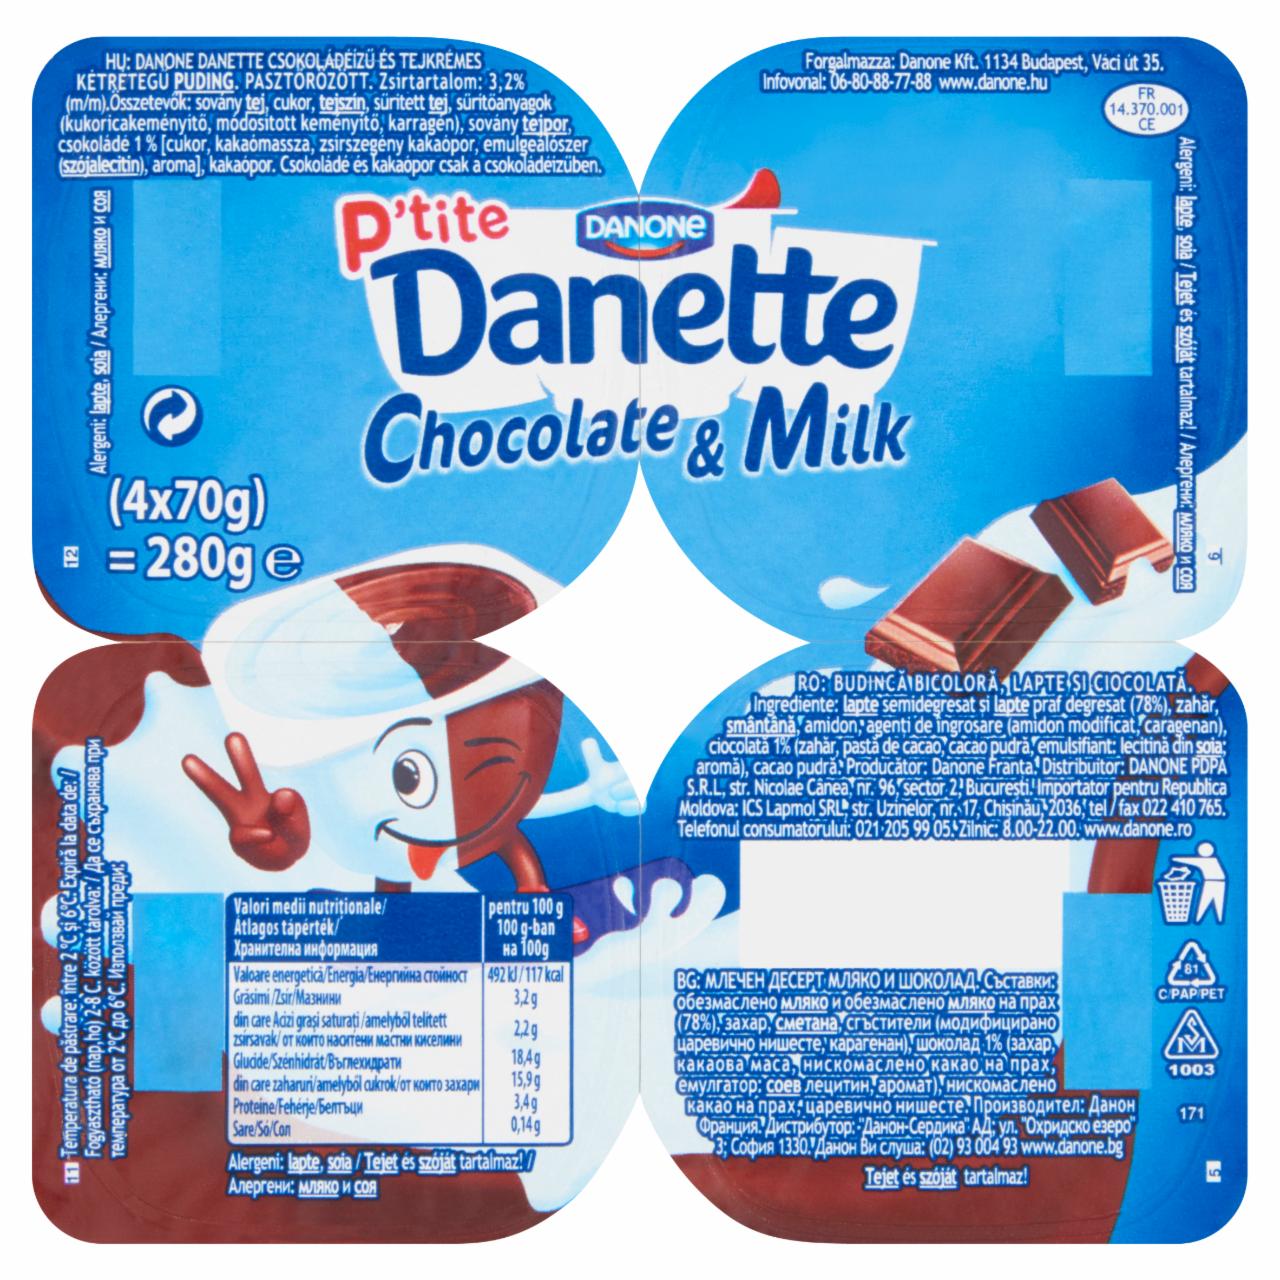 Képek - Danone Danette csokoládéízű és tejkrémes kétrétegű puding 4 x 70 g (280 g)